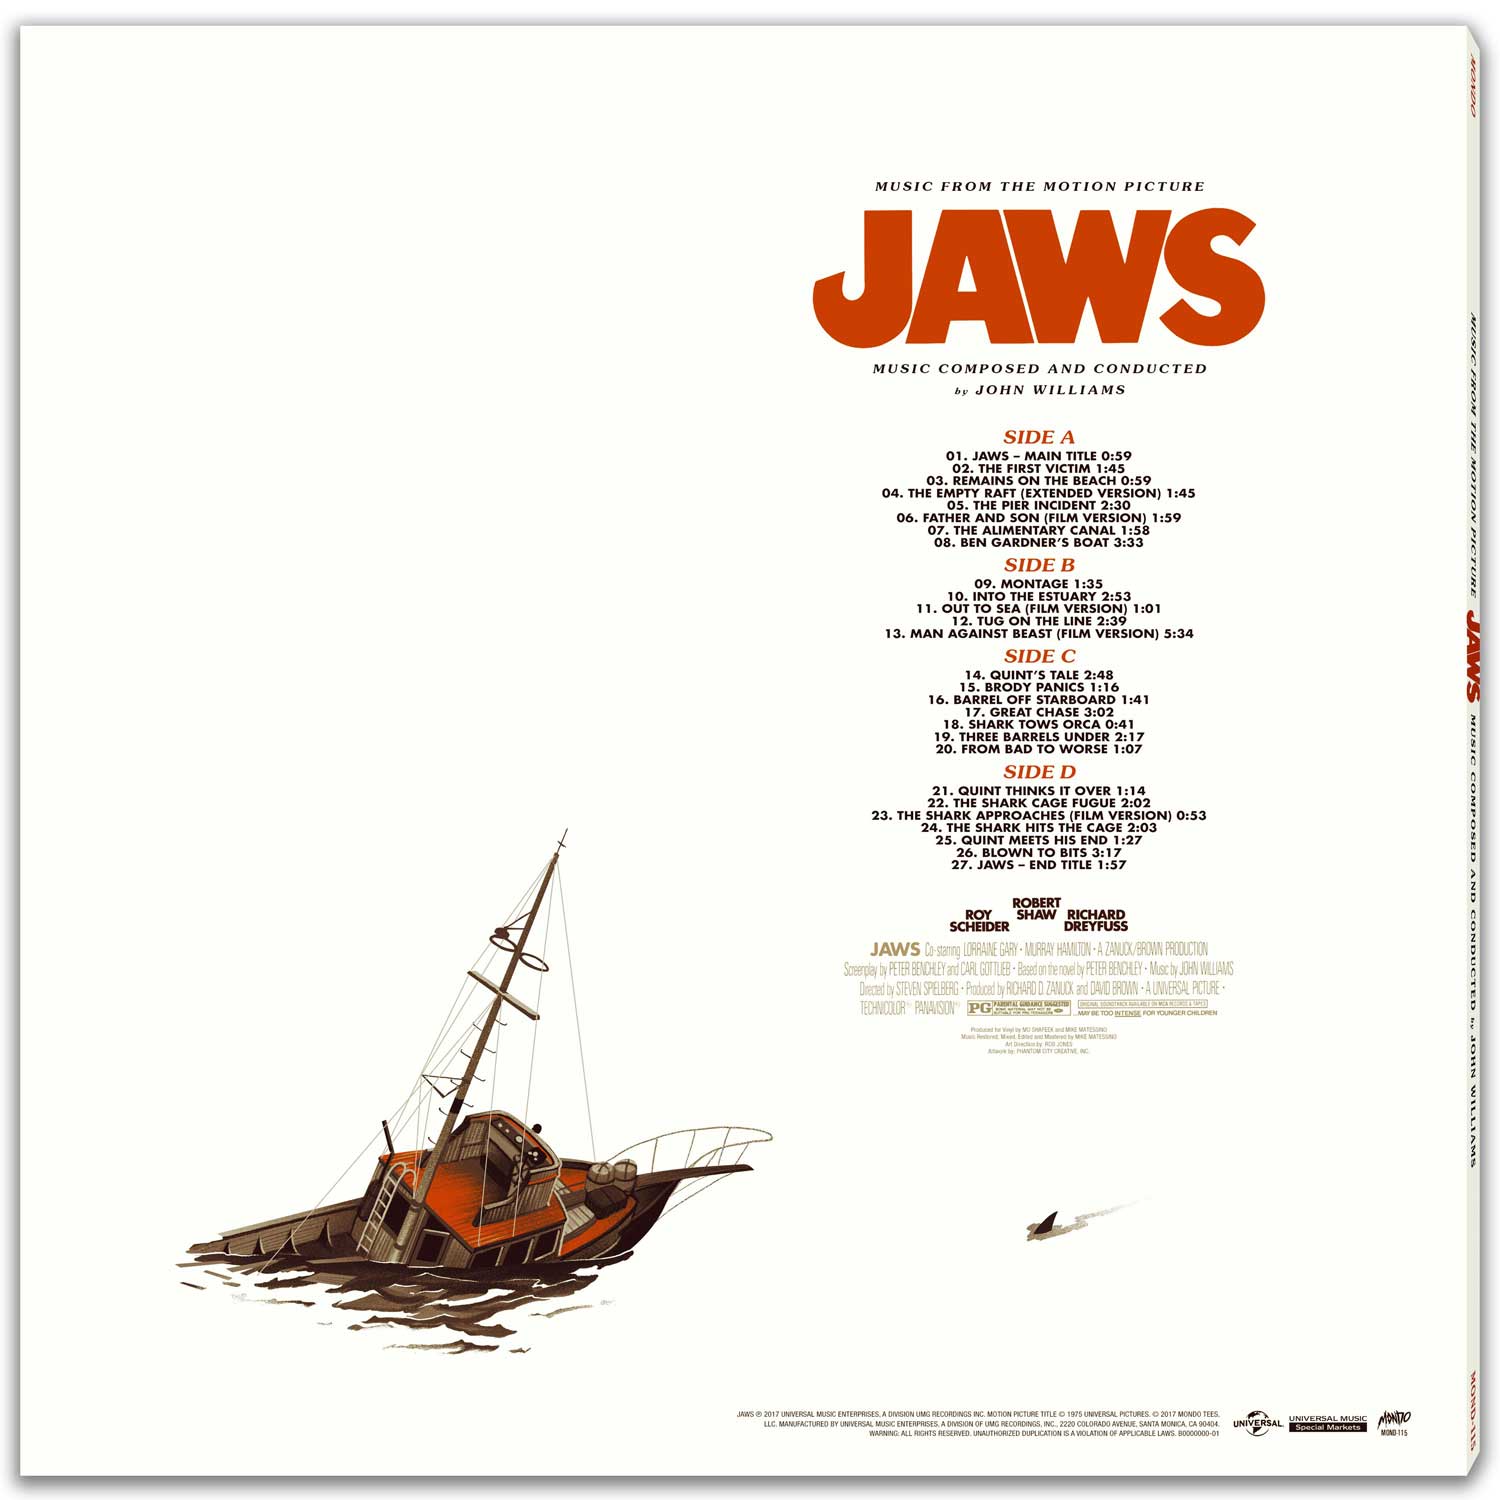 《大白鯊》（Jaws）是大導演史提芬史匹堡的第 2 部電影長片，1975 年上映之時，大受歡迎，甚至使人怕了到沙灘游泳。還記得過往明珠台經常重播，一直有不錯的收視。但大家可能不知道，《大白鯊》雖有相當經典的配樂，嚴格來說，卻沒有正式發行過黑膠唱片。